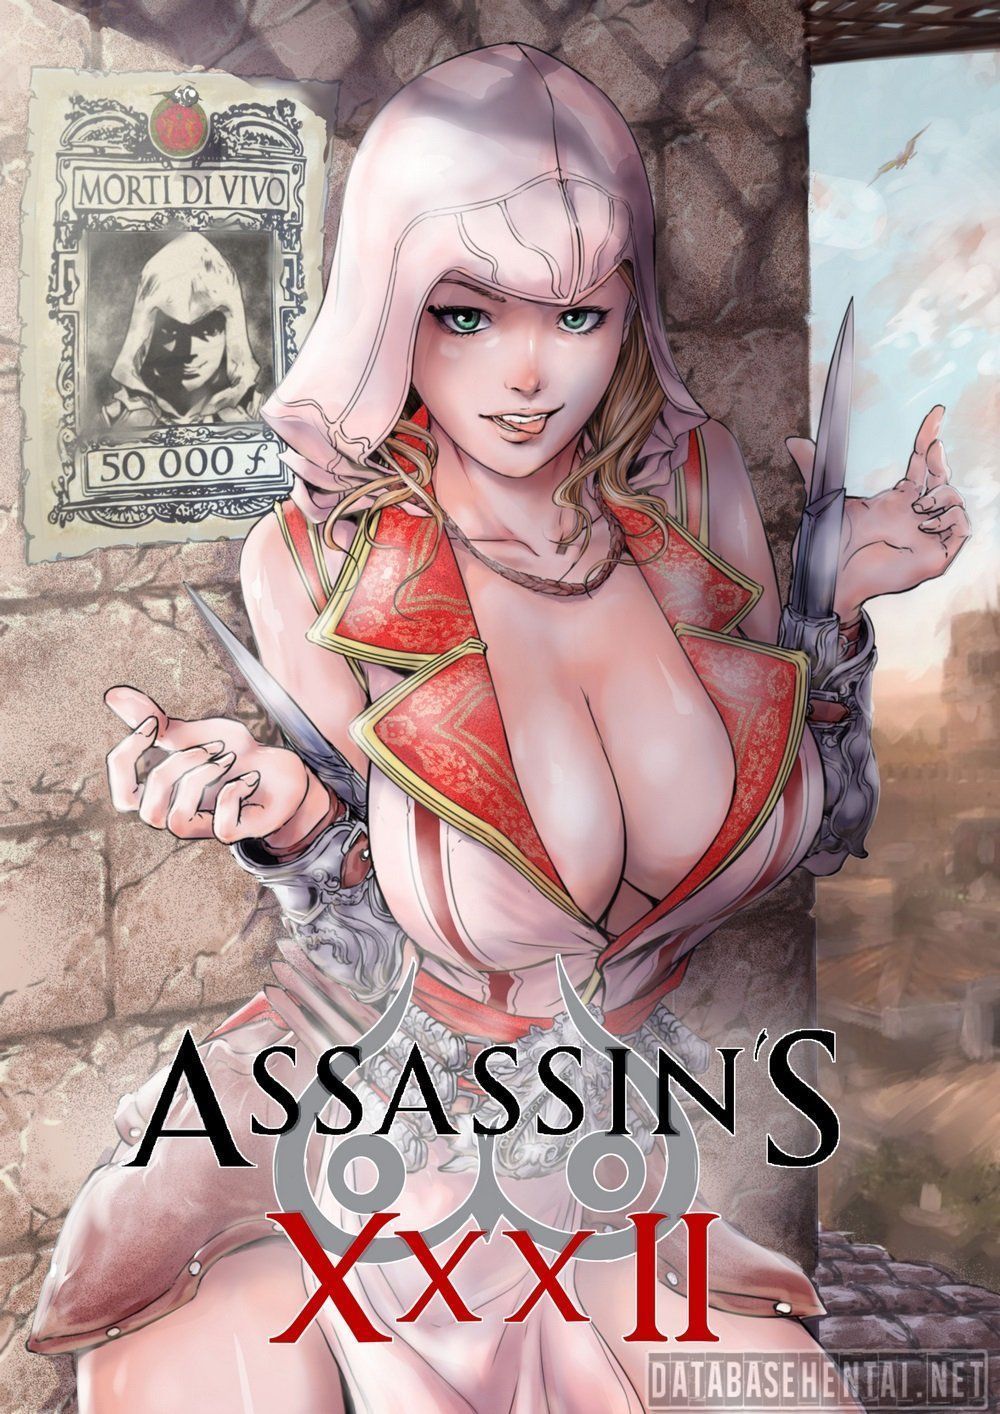 Assassin's creed pornos